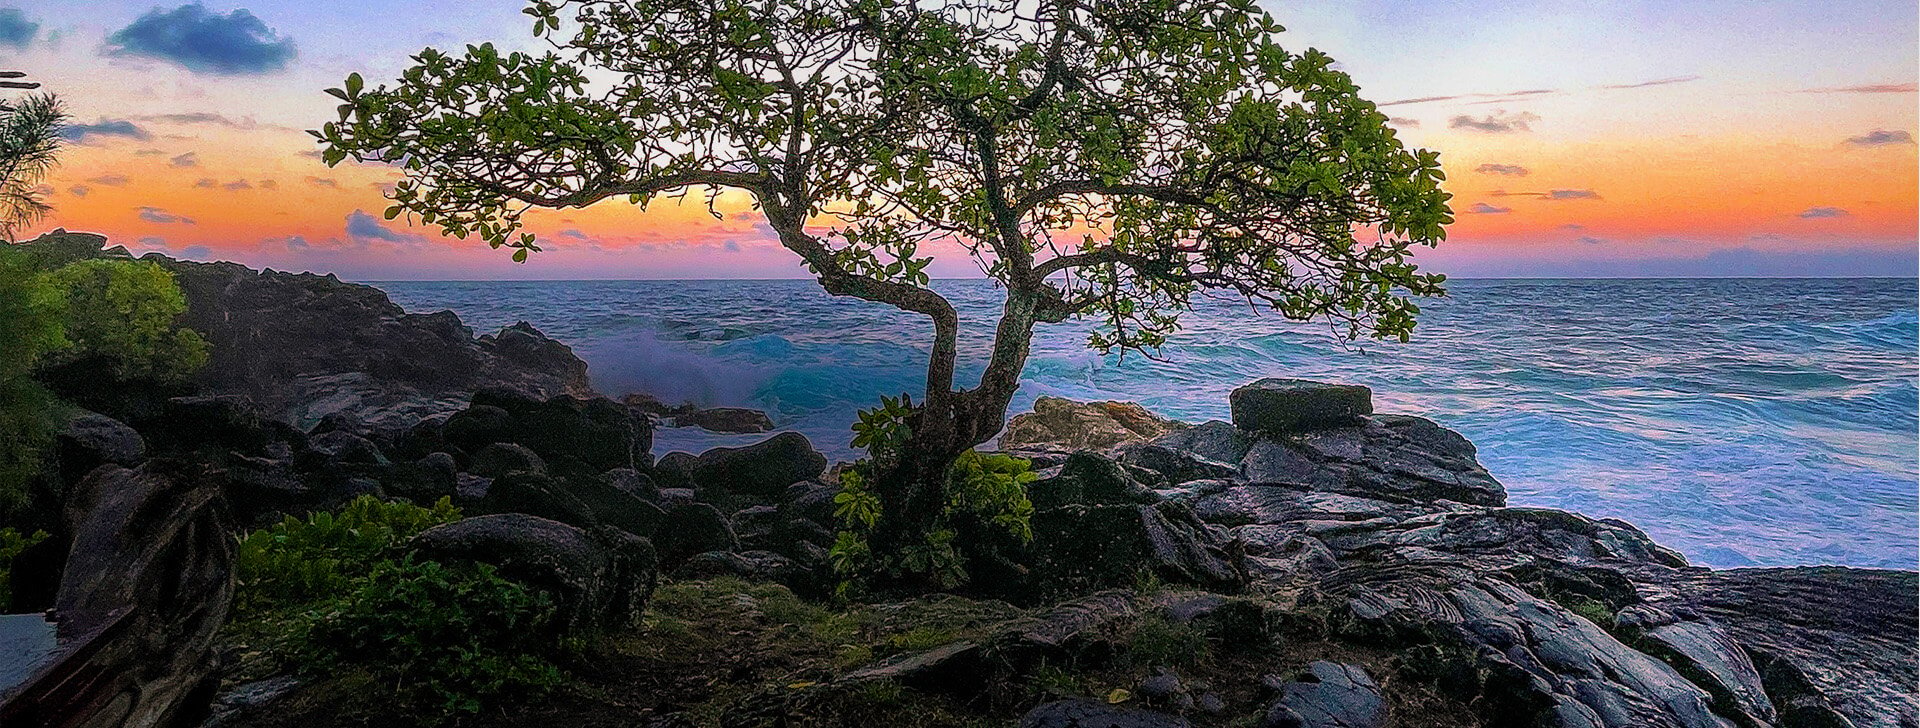 A tree growing in a rocky shoreline